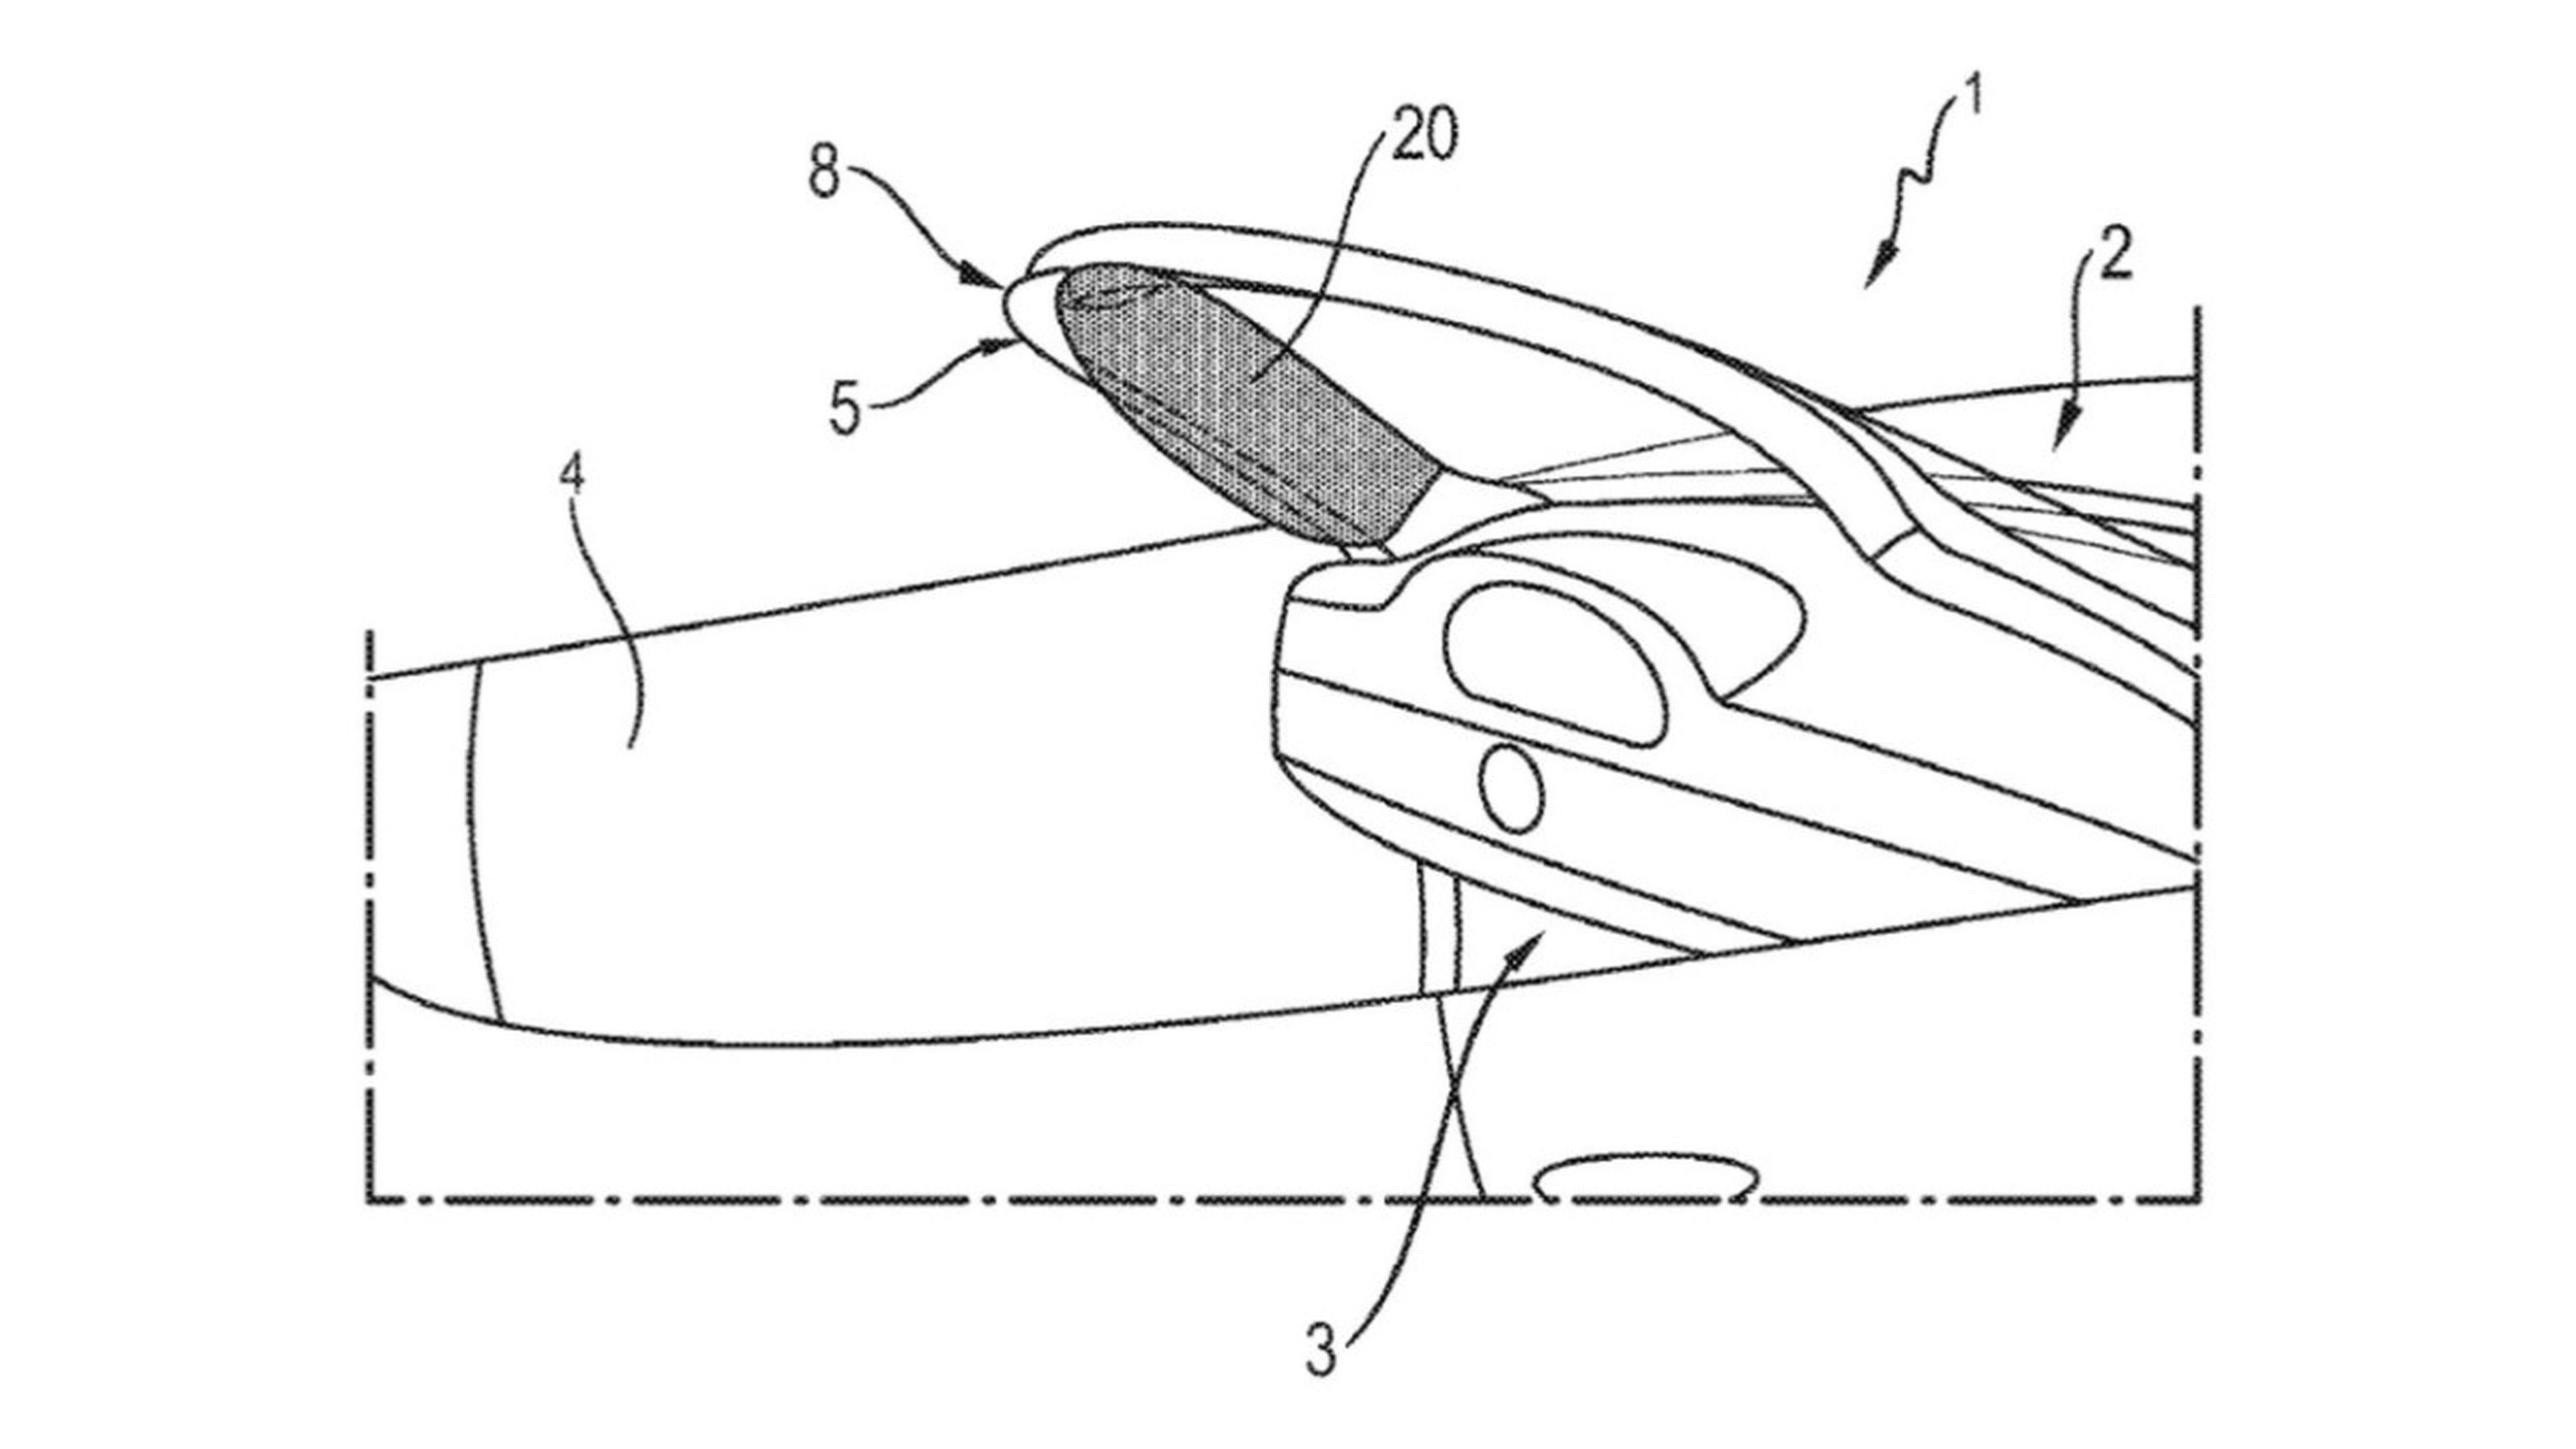 Porsche patente airbag descapotables